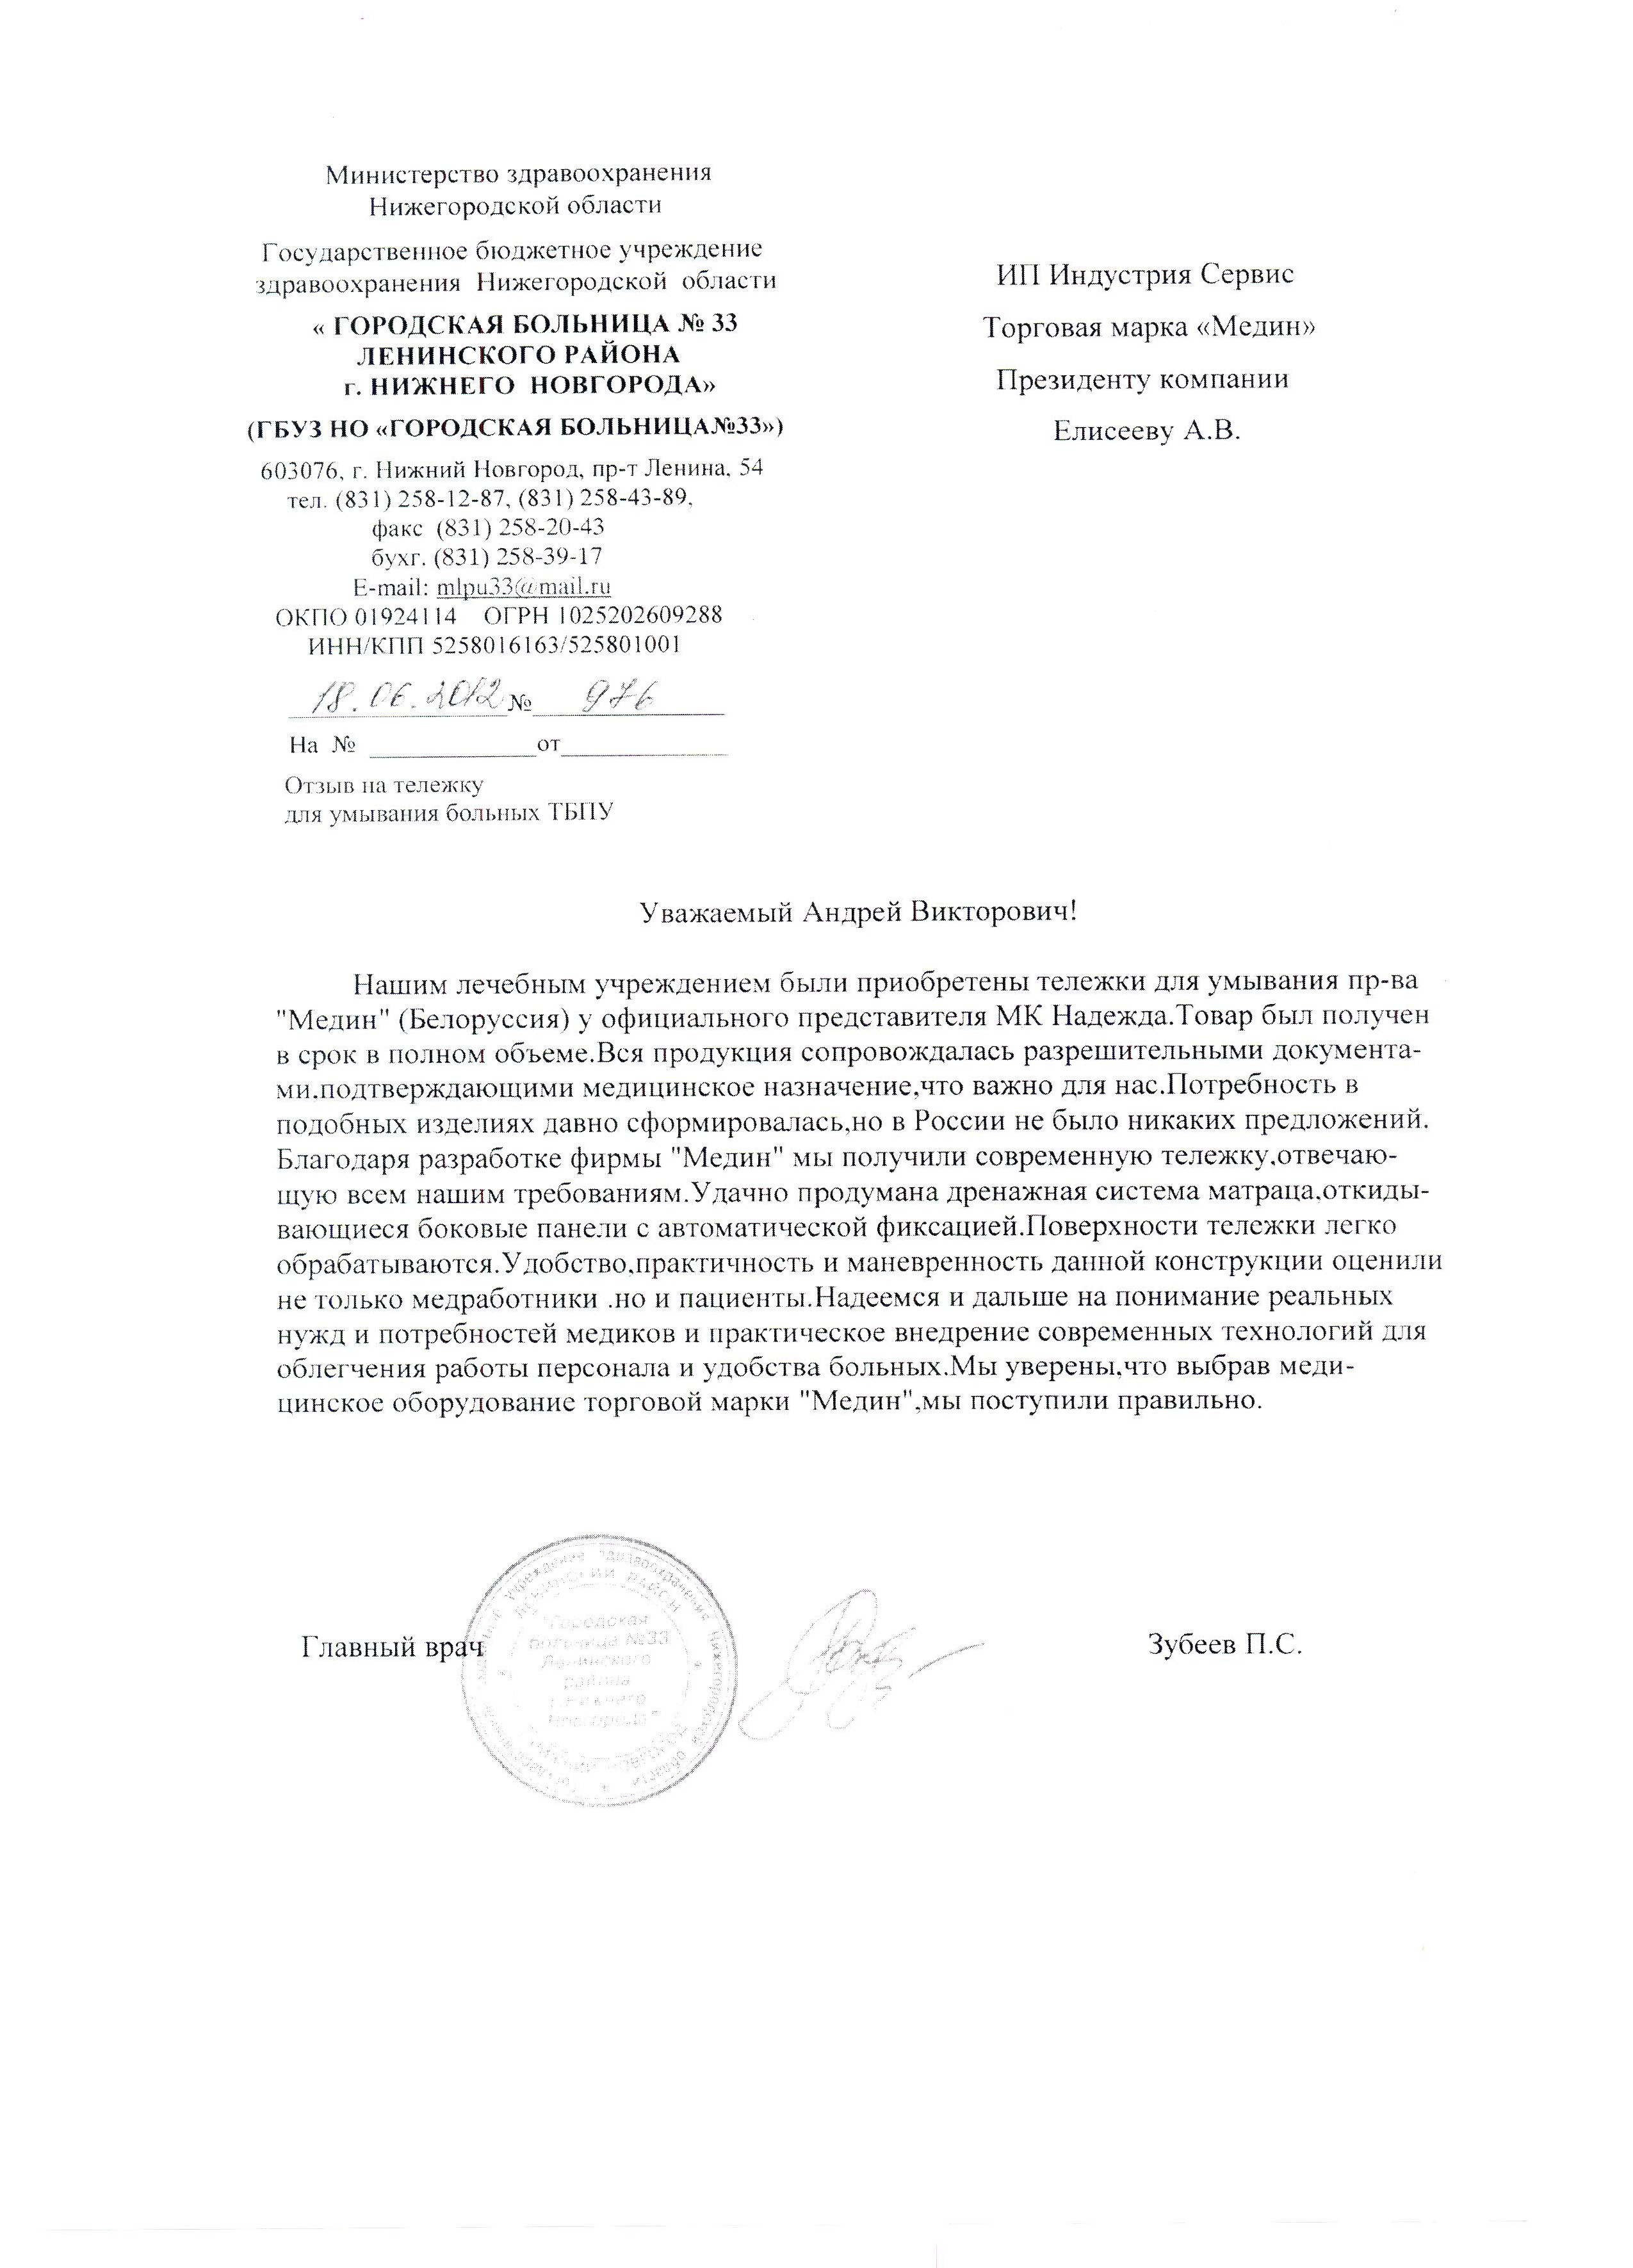 ГБ №33 Нижнего Новгорода о тележках медицинских для умывания больных ТБПУ